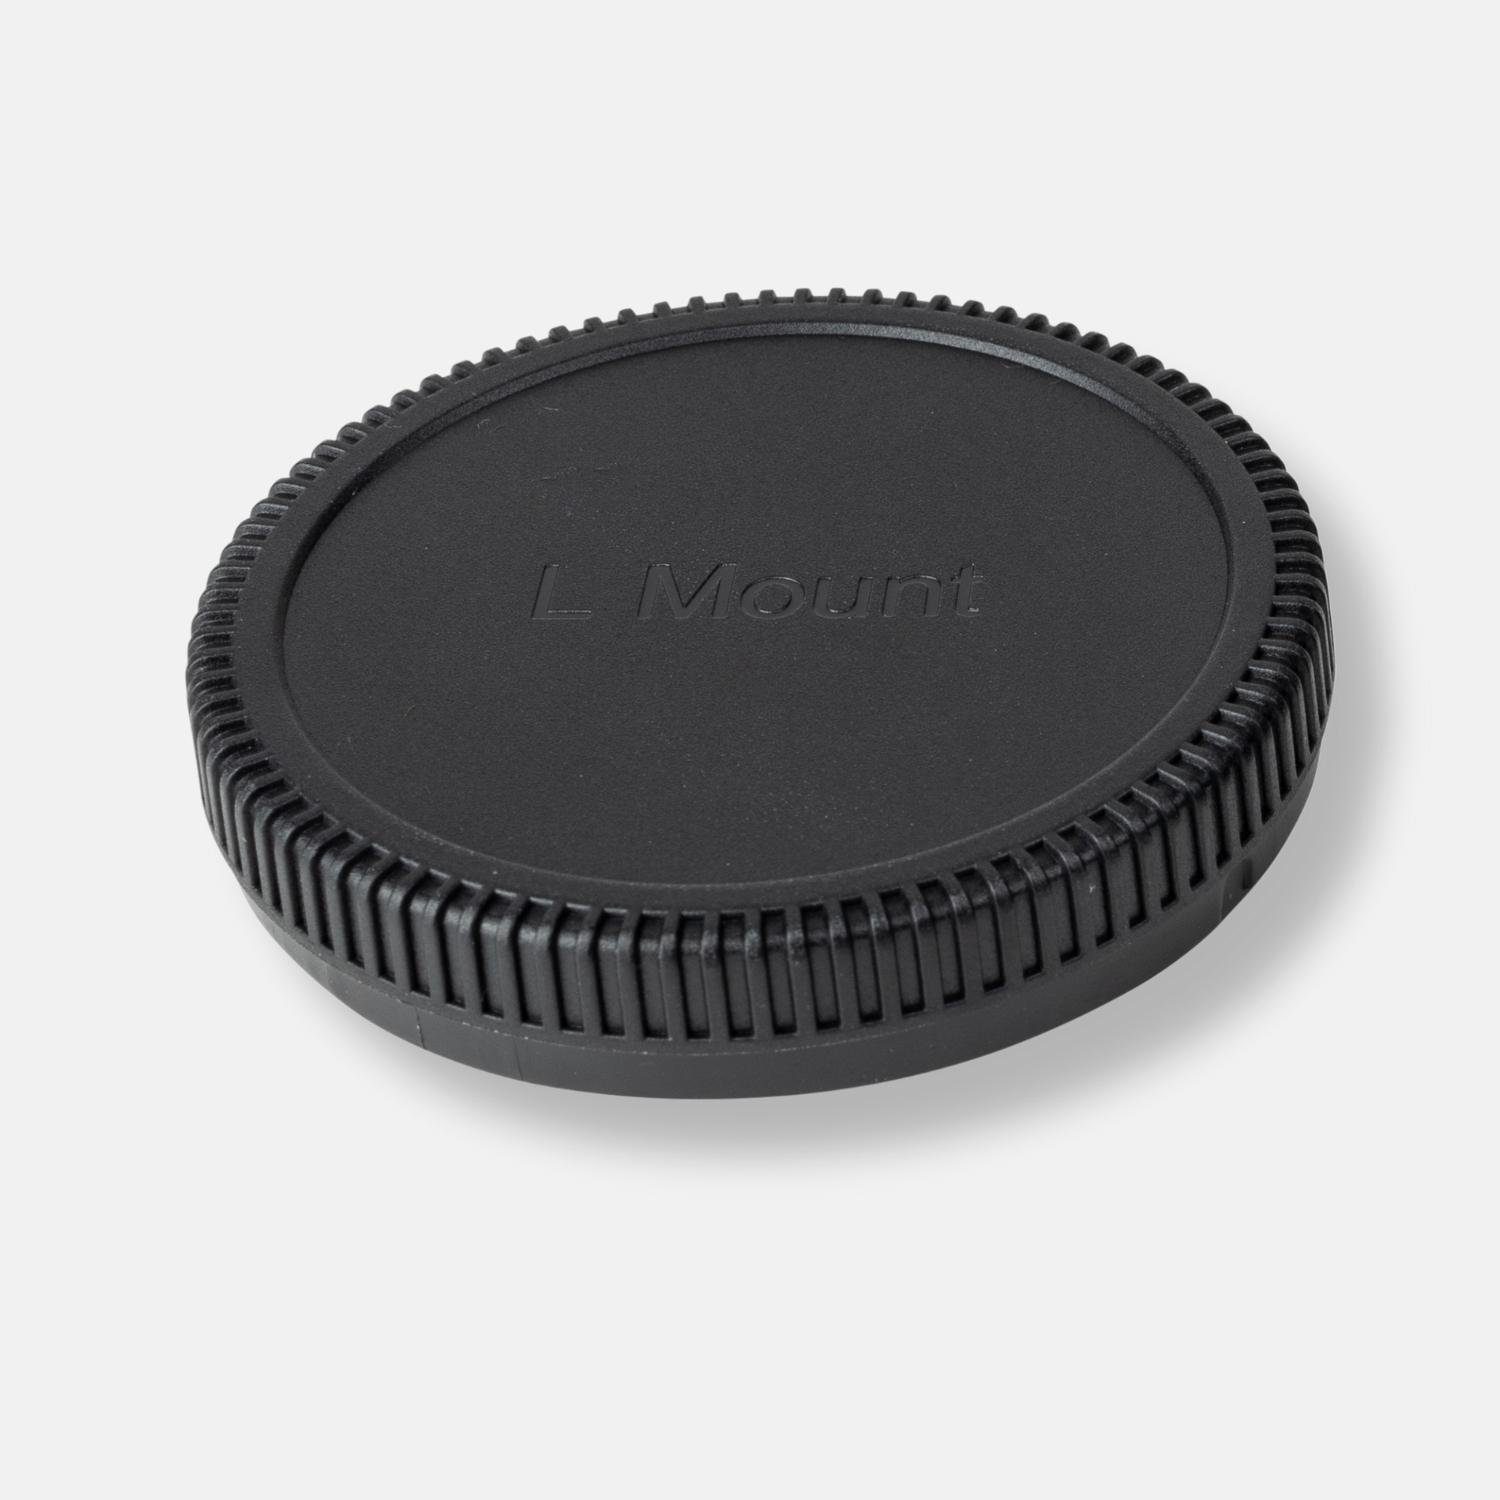 Objektivrückdeckel L-Mount für Objektivrückdeckel Panasonic Lens-Aid